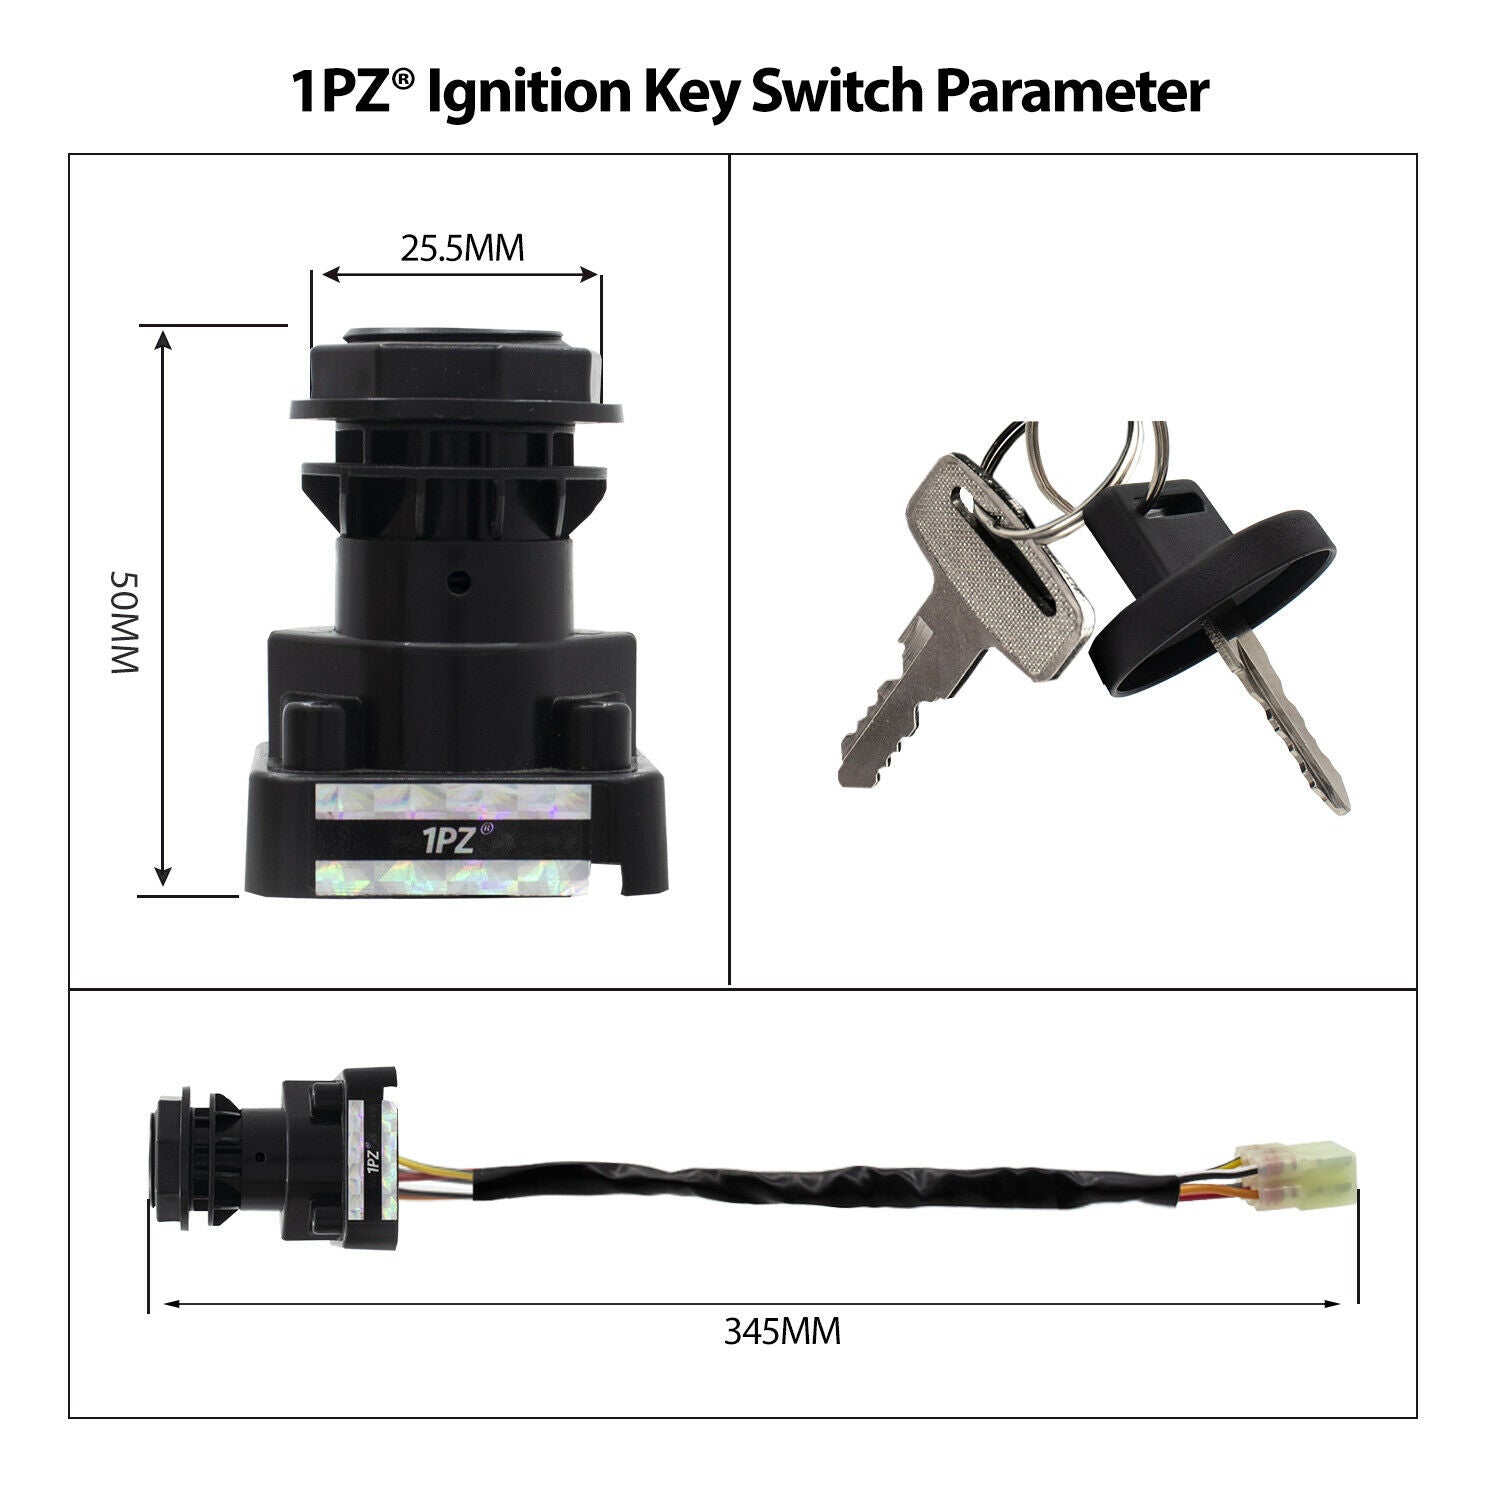 1PZ Ignition Key Switch for Suzuki King Quad 400 450 500 550 750 LTA400 LTA400F LTF400 LTF400F LTA450X LTA500 LTA550 LTA750 Eiger 400